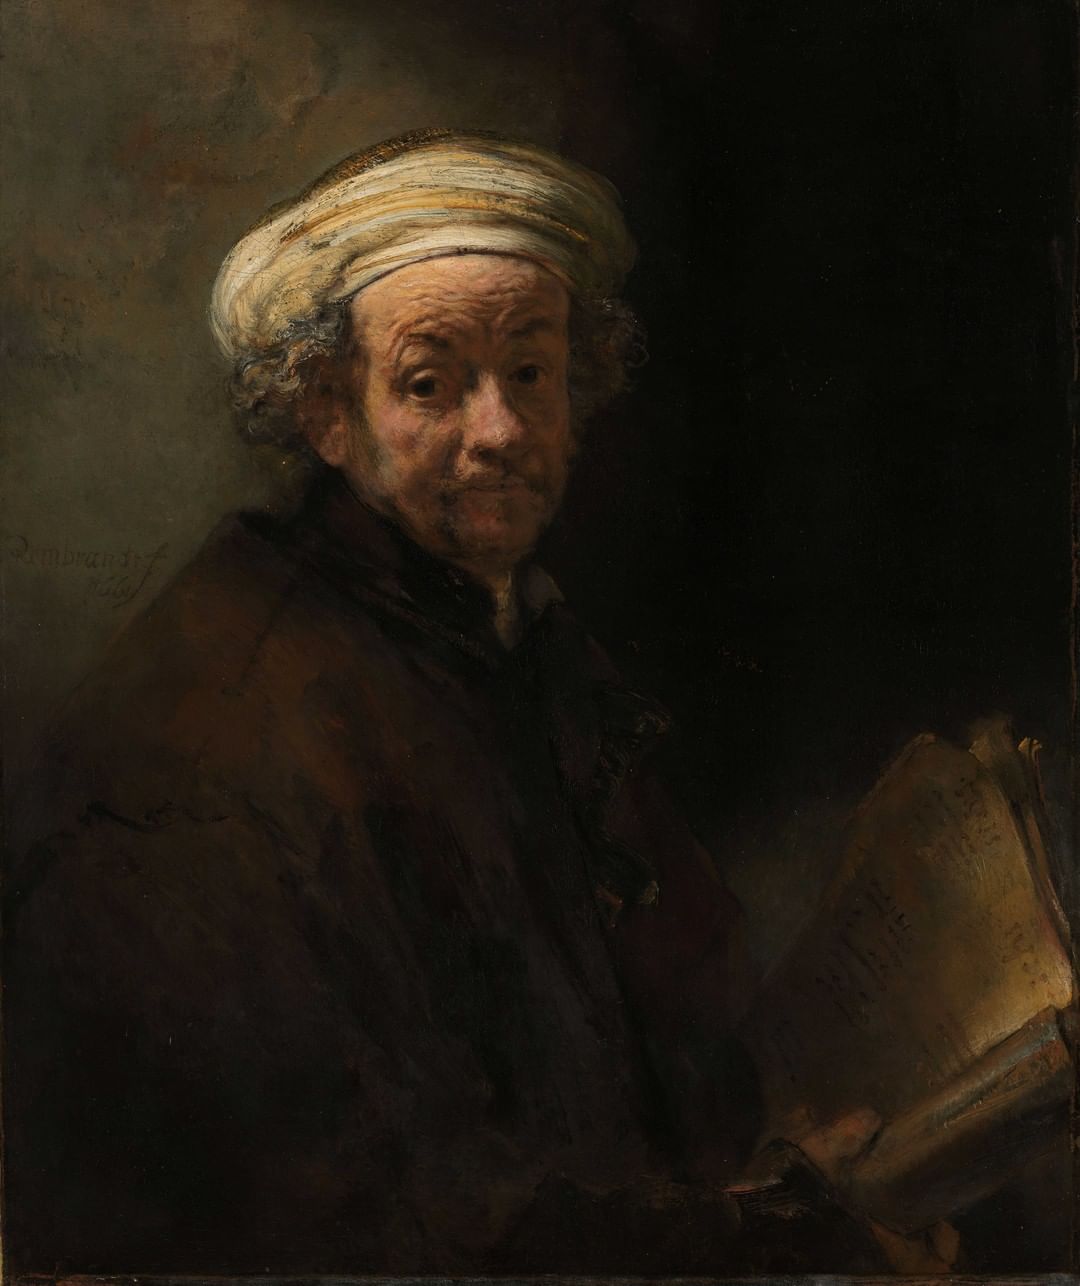 "La ronda de noche" de Rembrandt